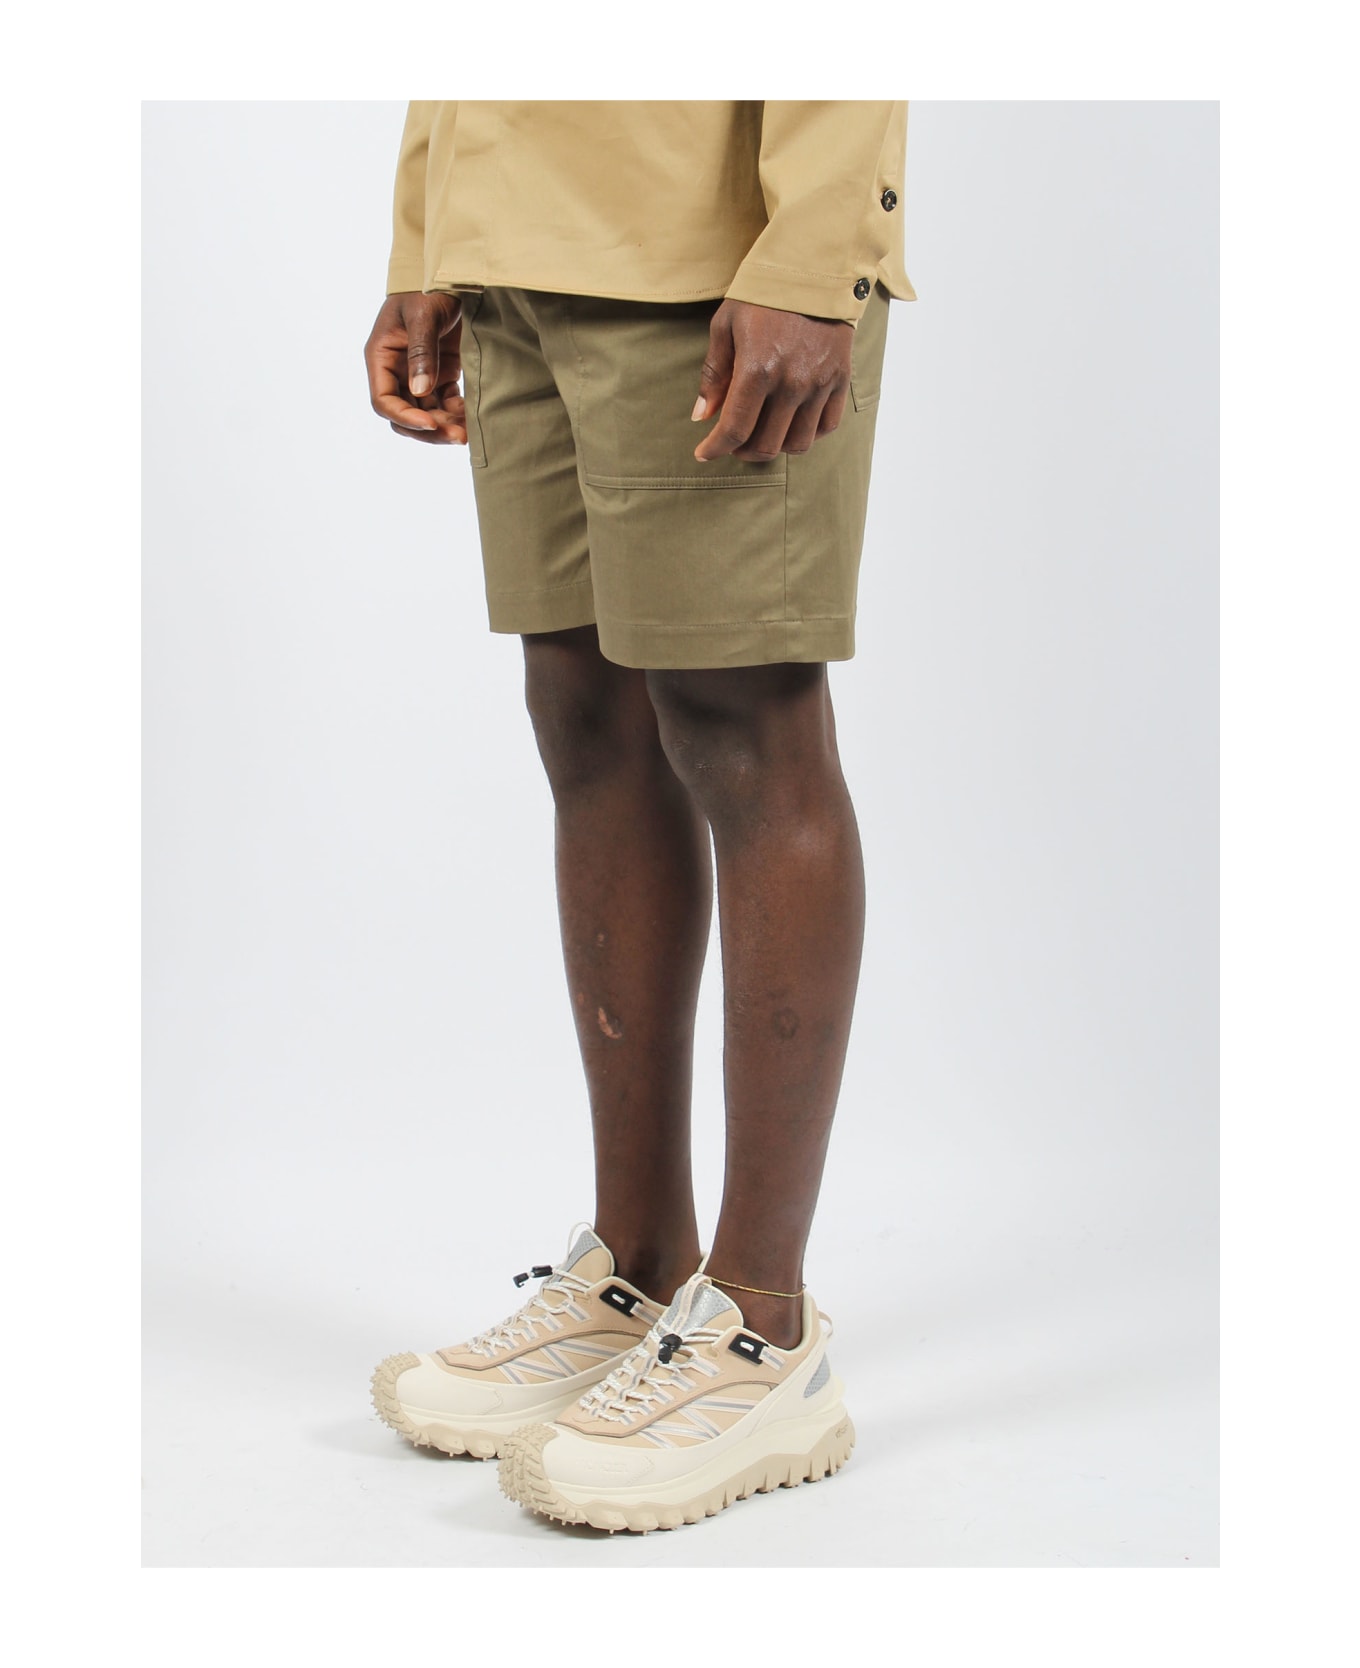 Moncler Cotton Bermuda Shorts - Green